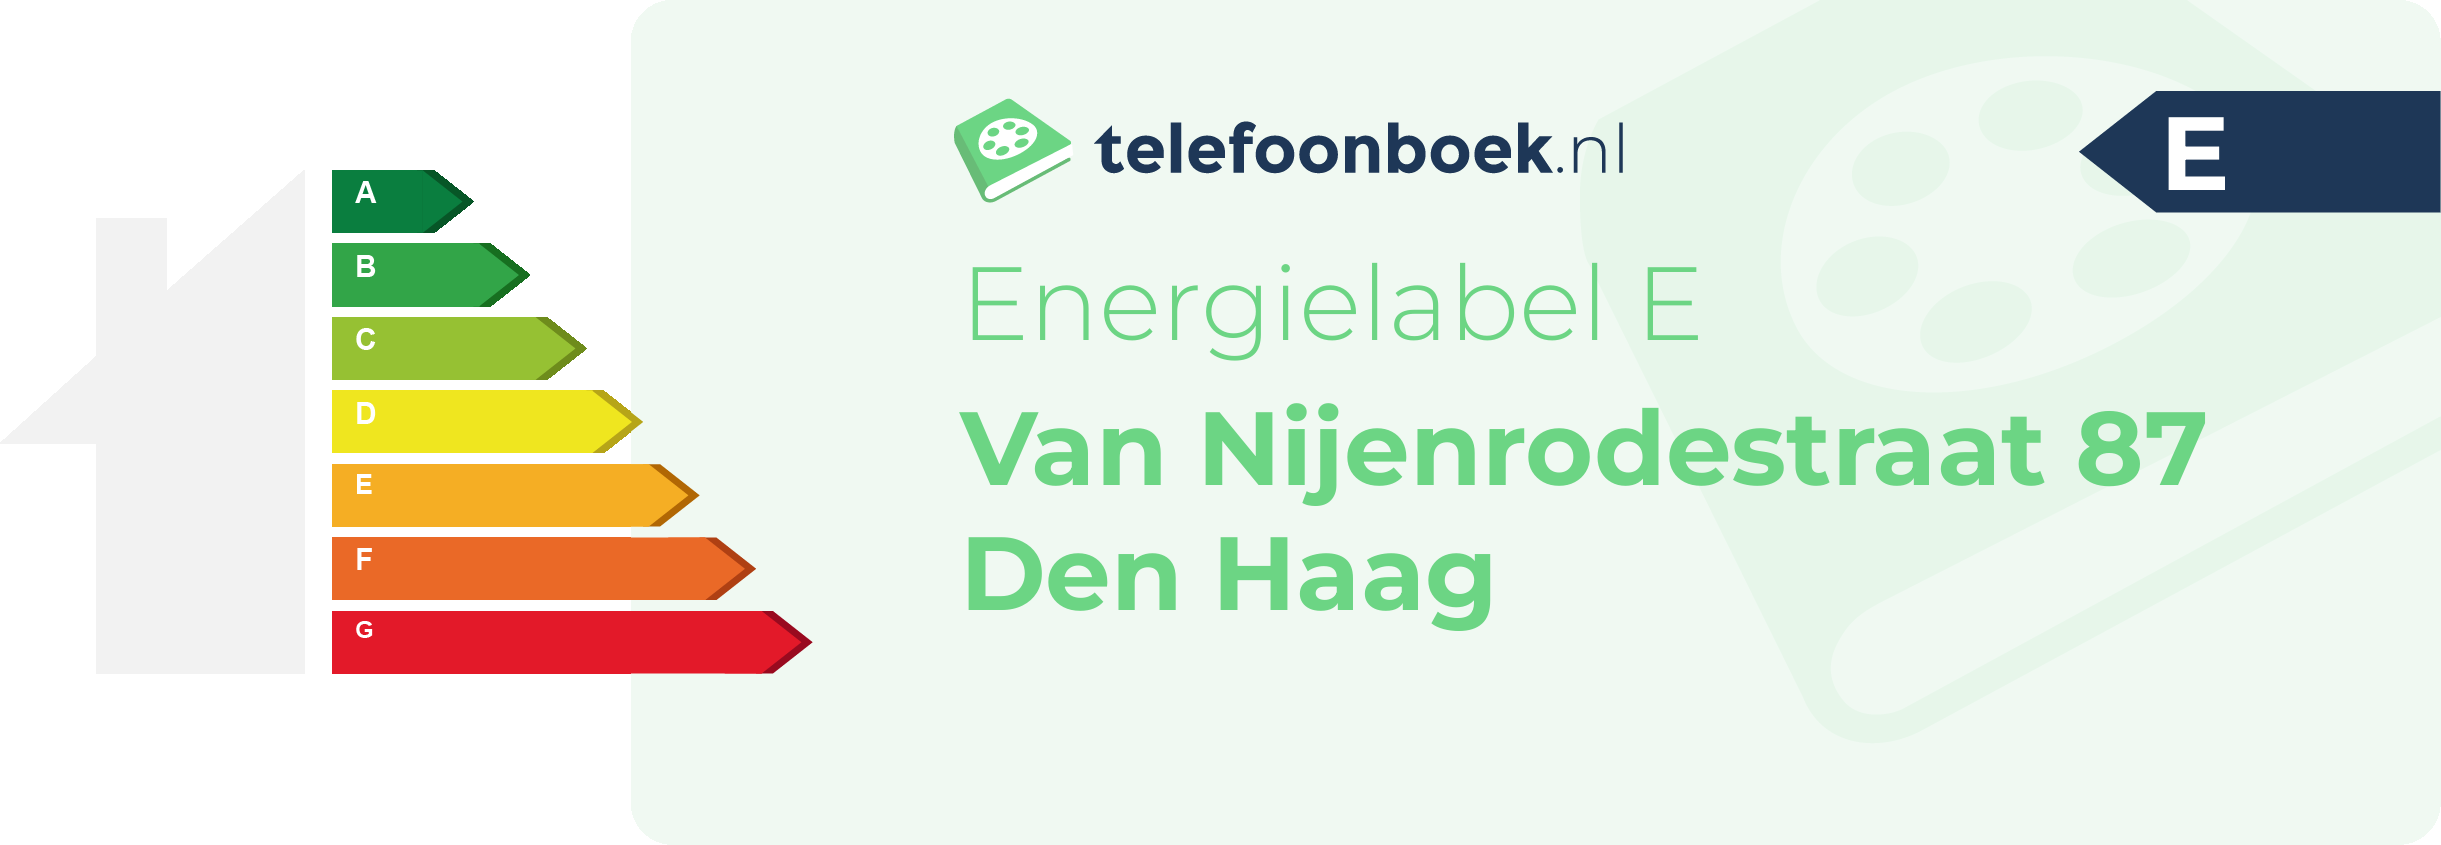 Energielabel Van Nijenrodestraat 87 Den Haag